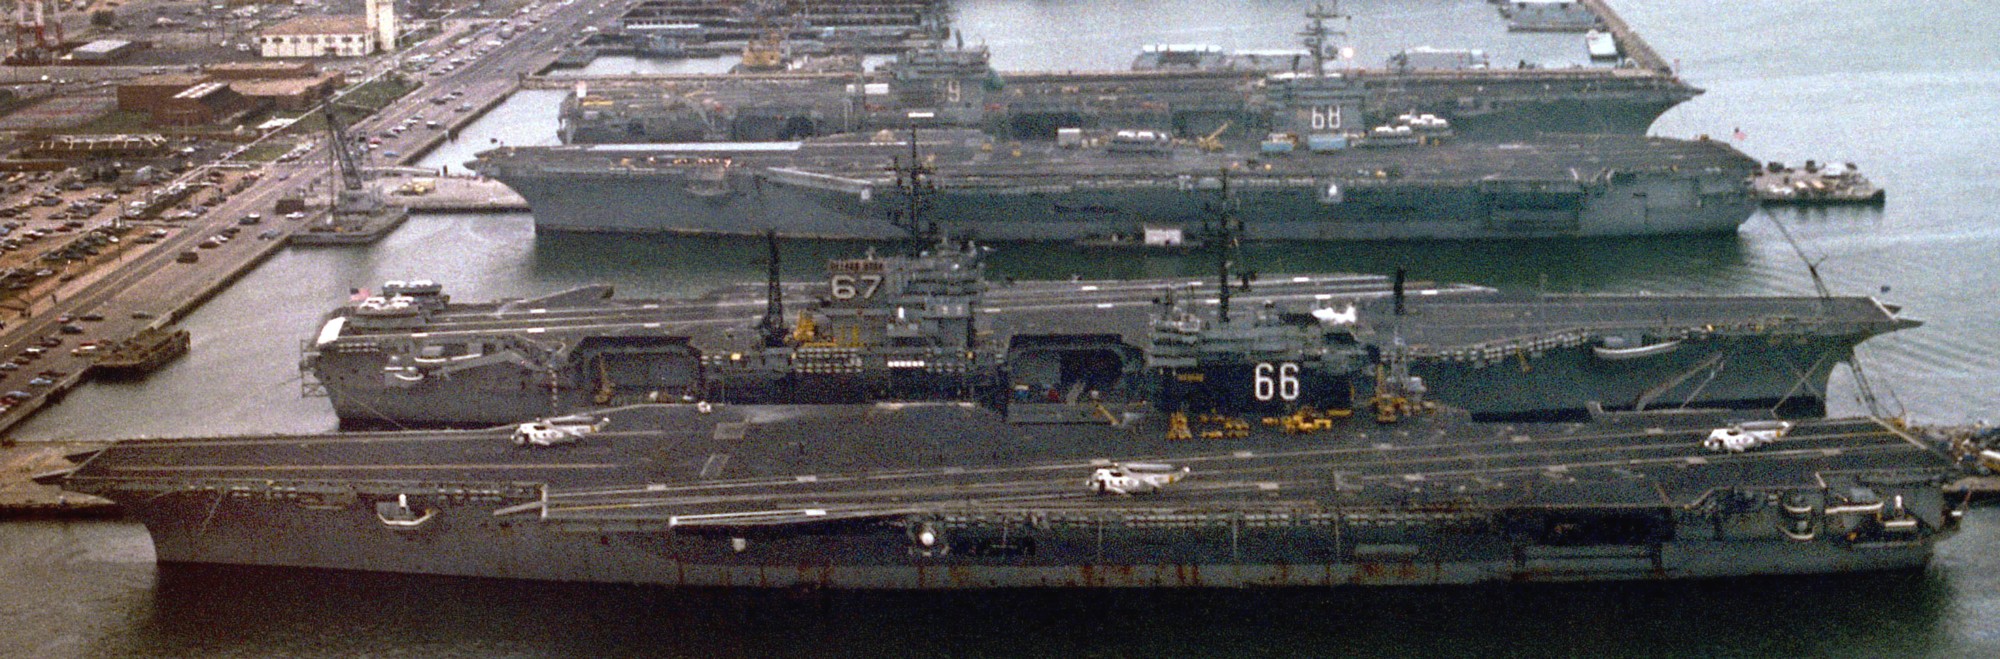 cv-66 uss america kitty hawk class aircraft carrier us navy 88